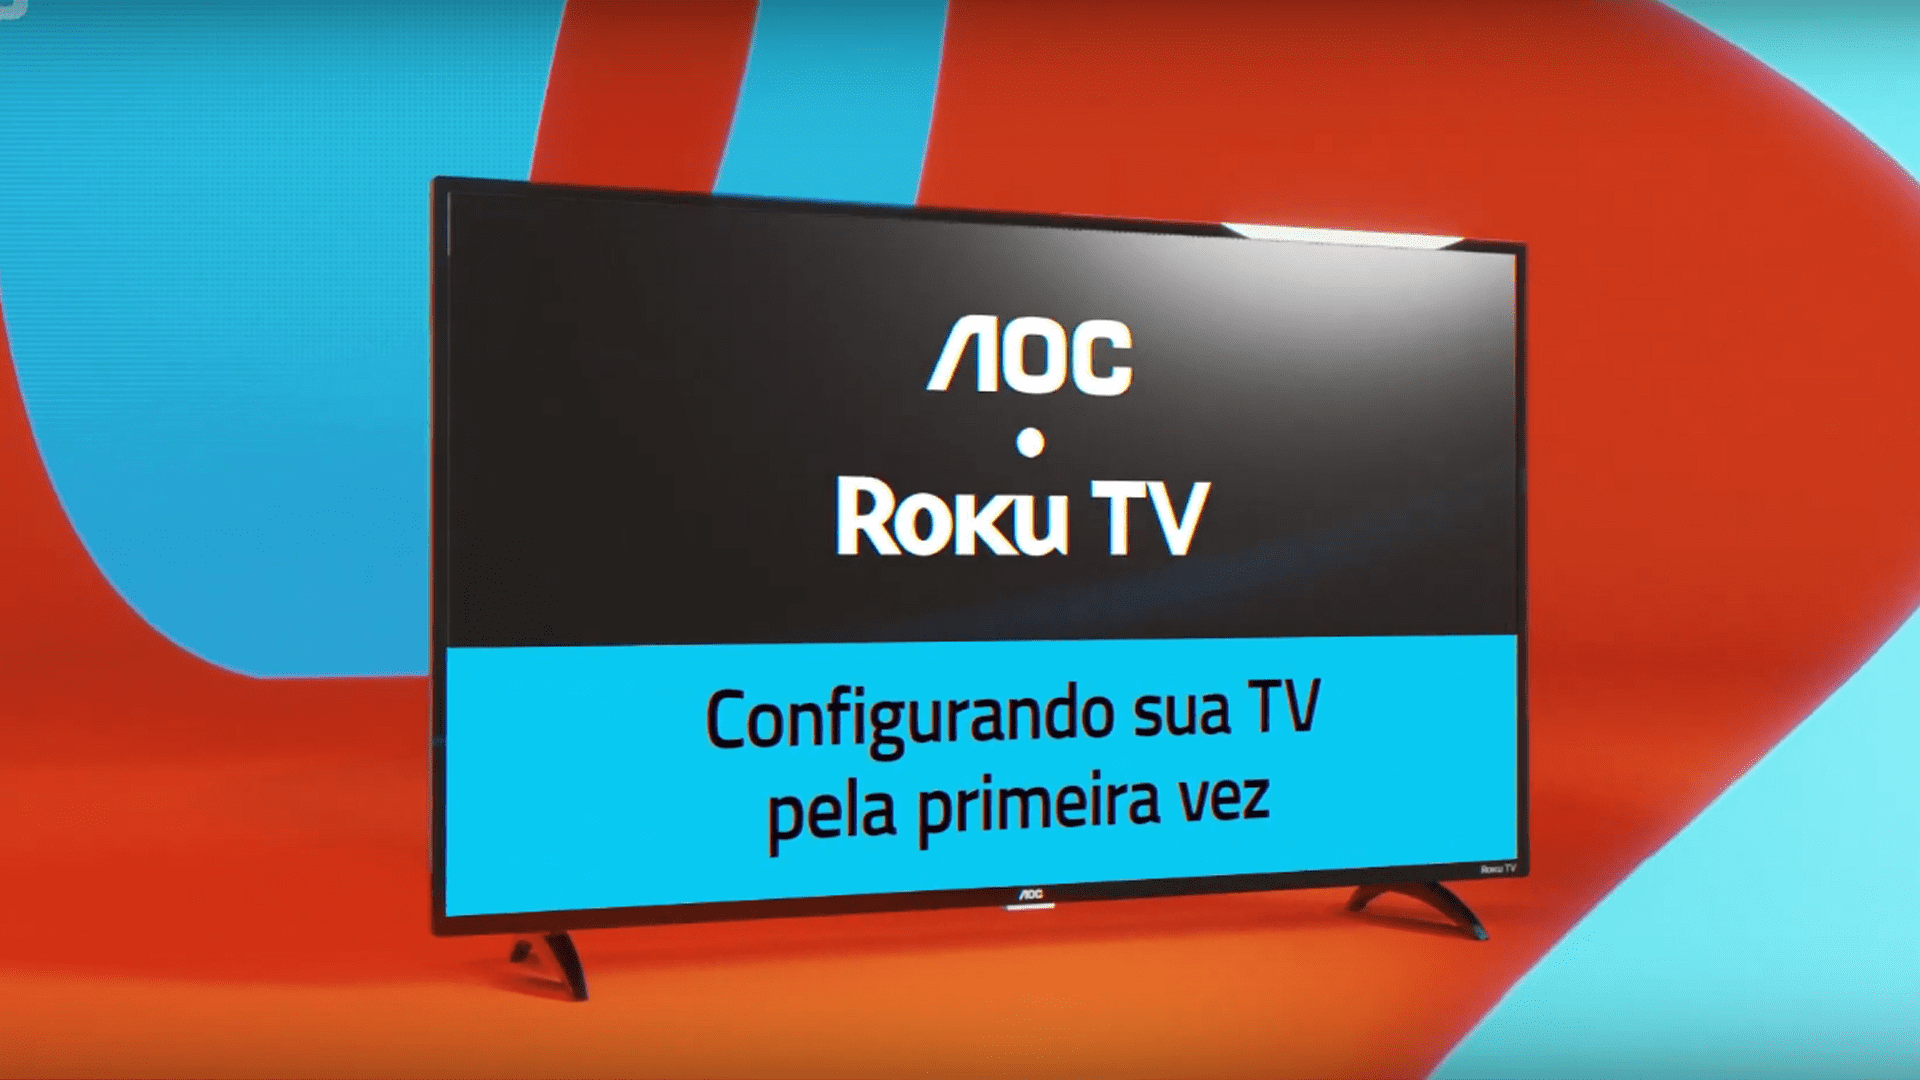 TV AOC Roku Como Baixar Aplicativos Tv Aoc Smart 